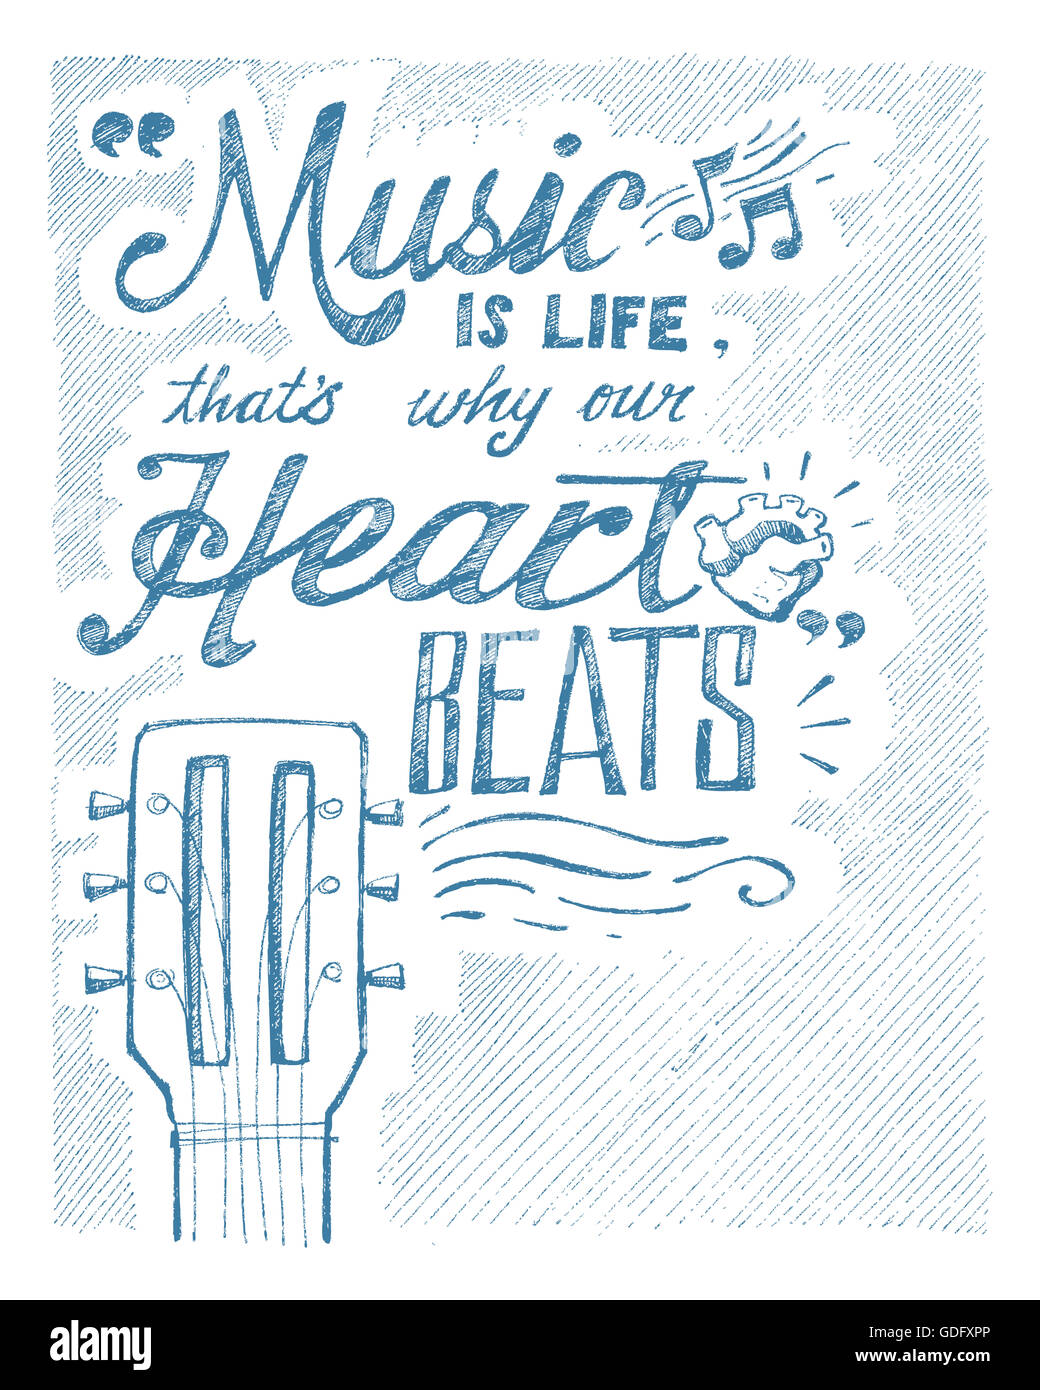 Illustration à la main ou d'un dessin de l'expression : La musique est la vie, c'est pourquoi notre cœur bat Banque D'Images